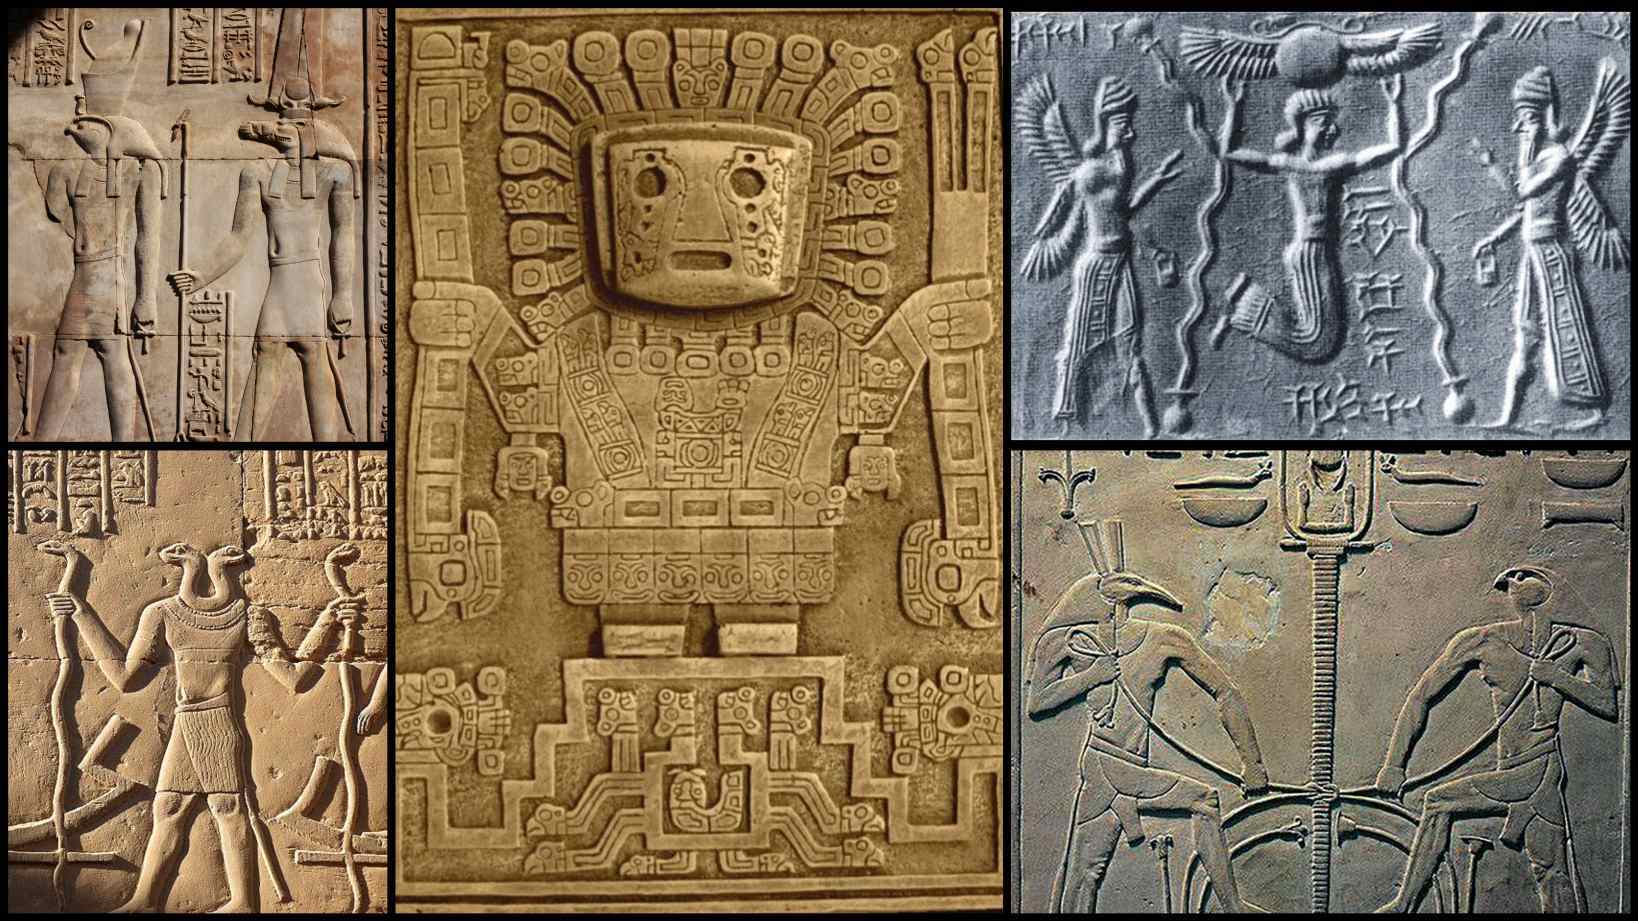 Skrifter fra 947 e.Kr. af Abu al-Hasan Ali al-Mas'udi beskriver arabiske sagn, der siger, at egypterne brugte levitation til at bygge pyramiderne. En 'magisk papyrus' blev placeret under de tunge sten, derefter blev stanerne slået med et radmetal. Derefter begyndte sten at flyde langs en sti beklædt med de samme mystiske metalstænger.